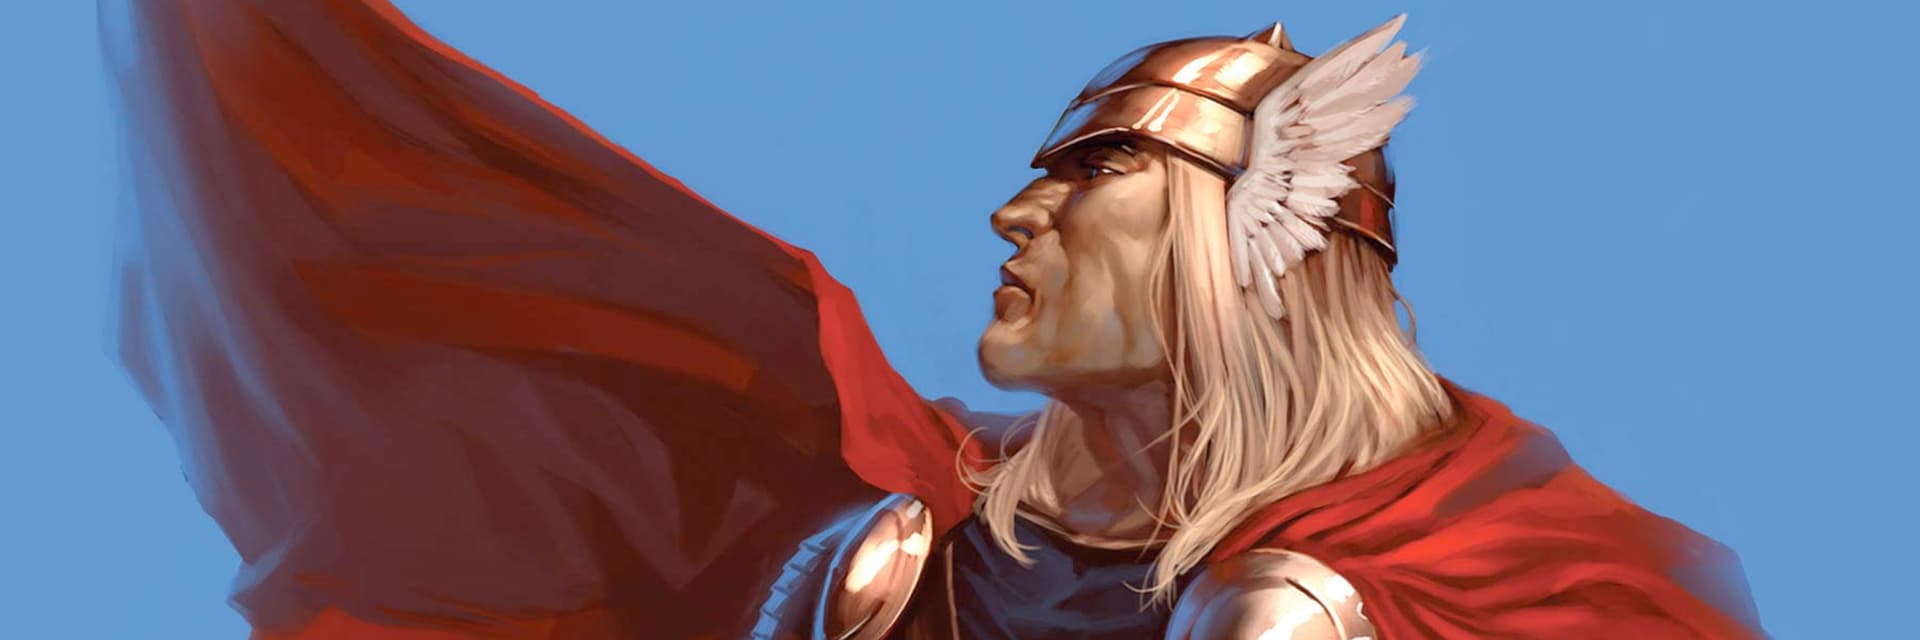 Thor Odinson, Disney Wiki